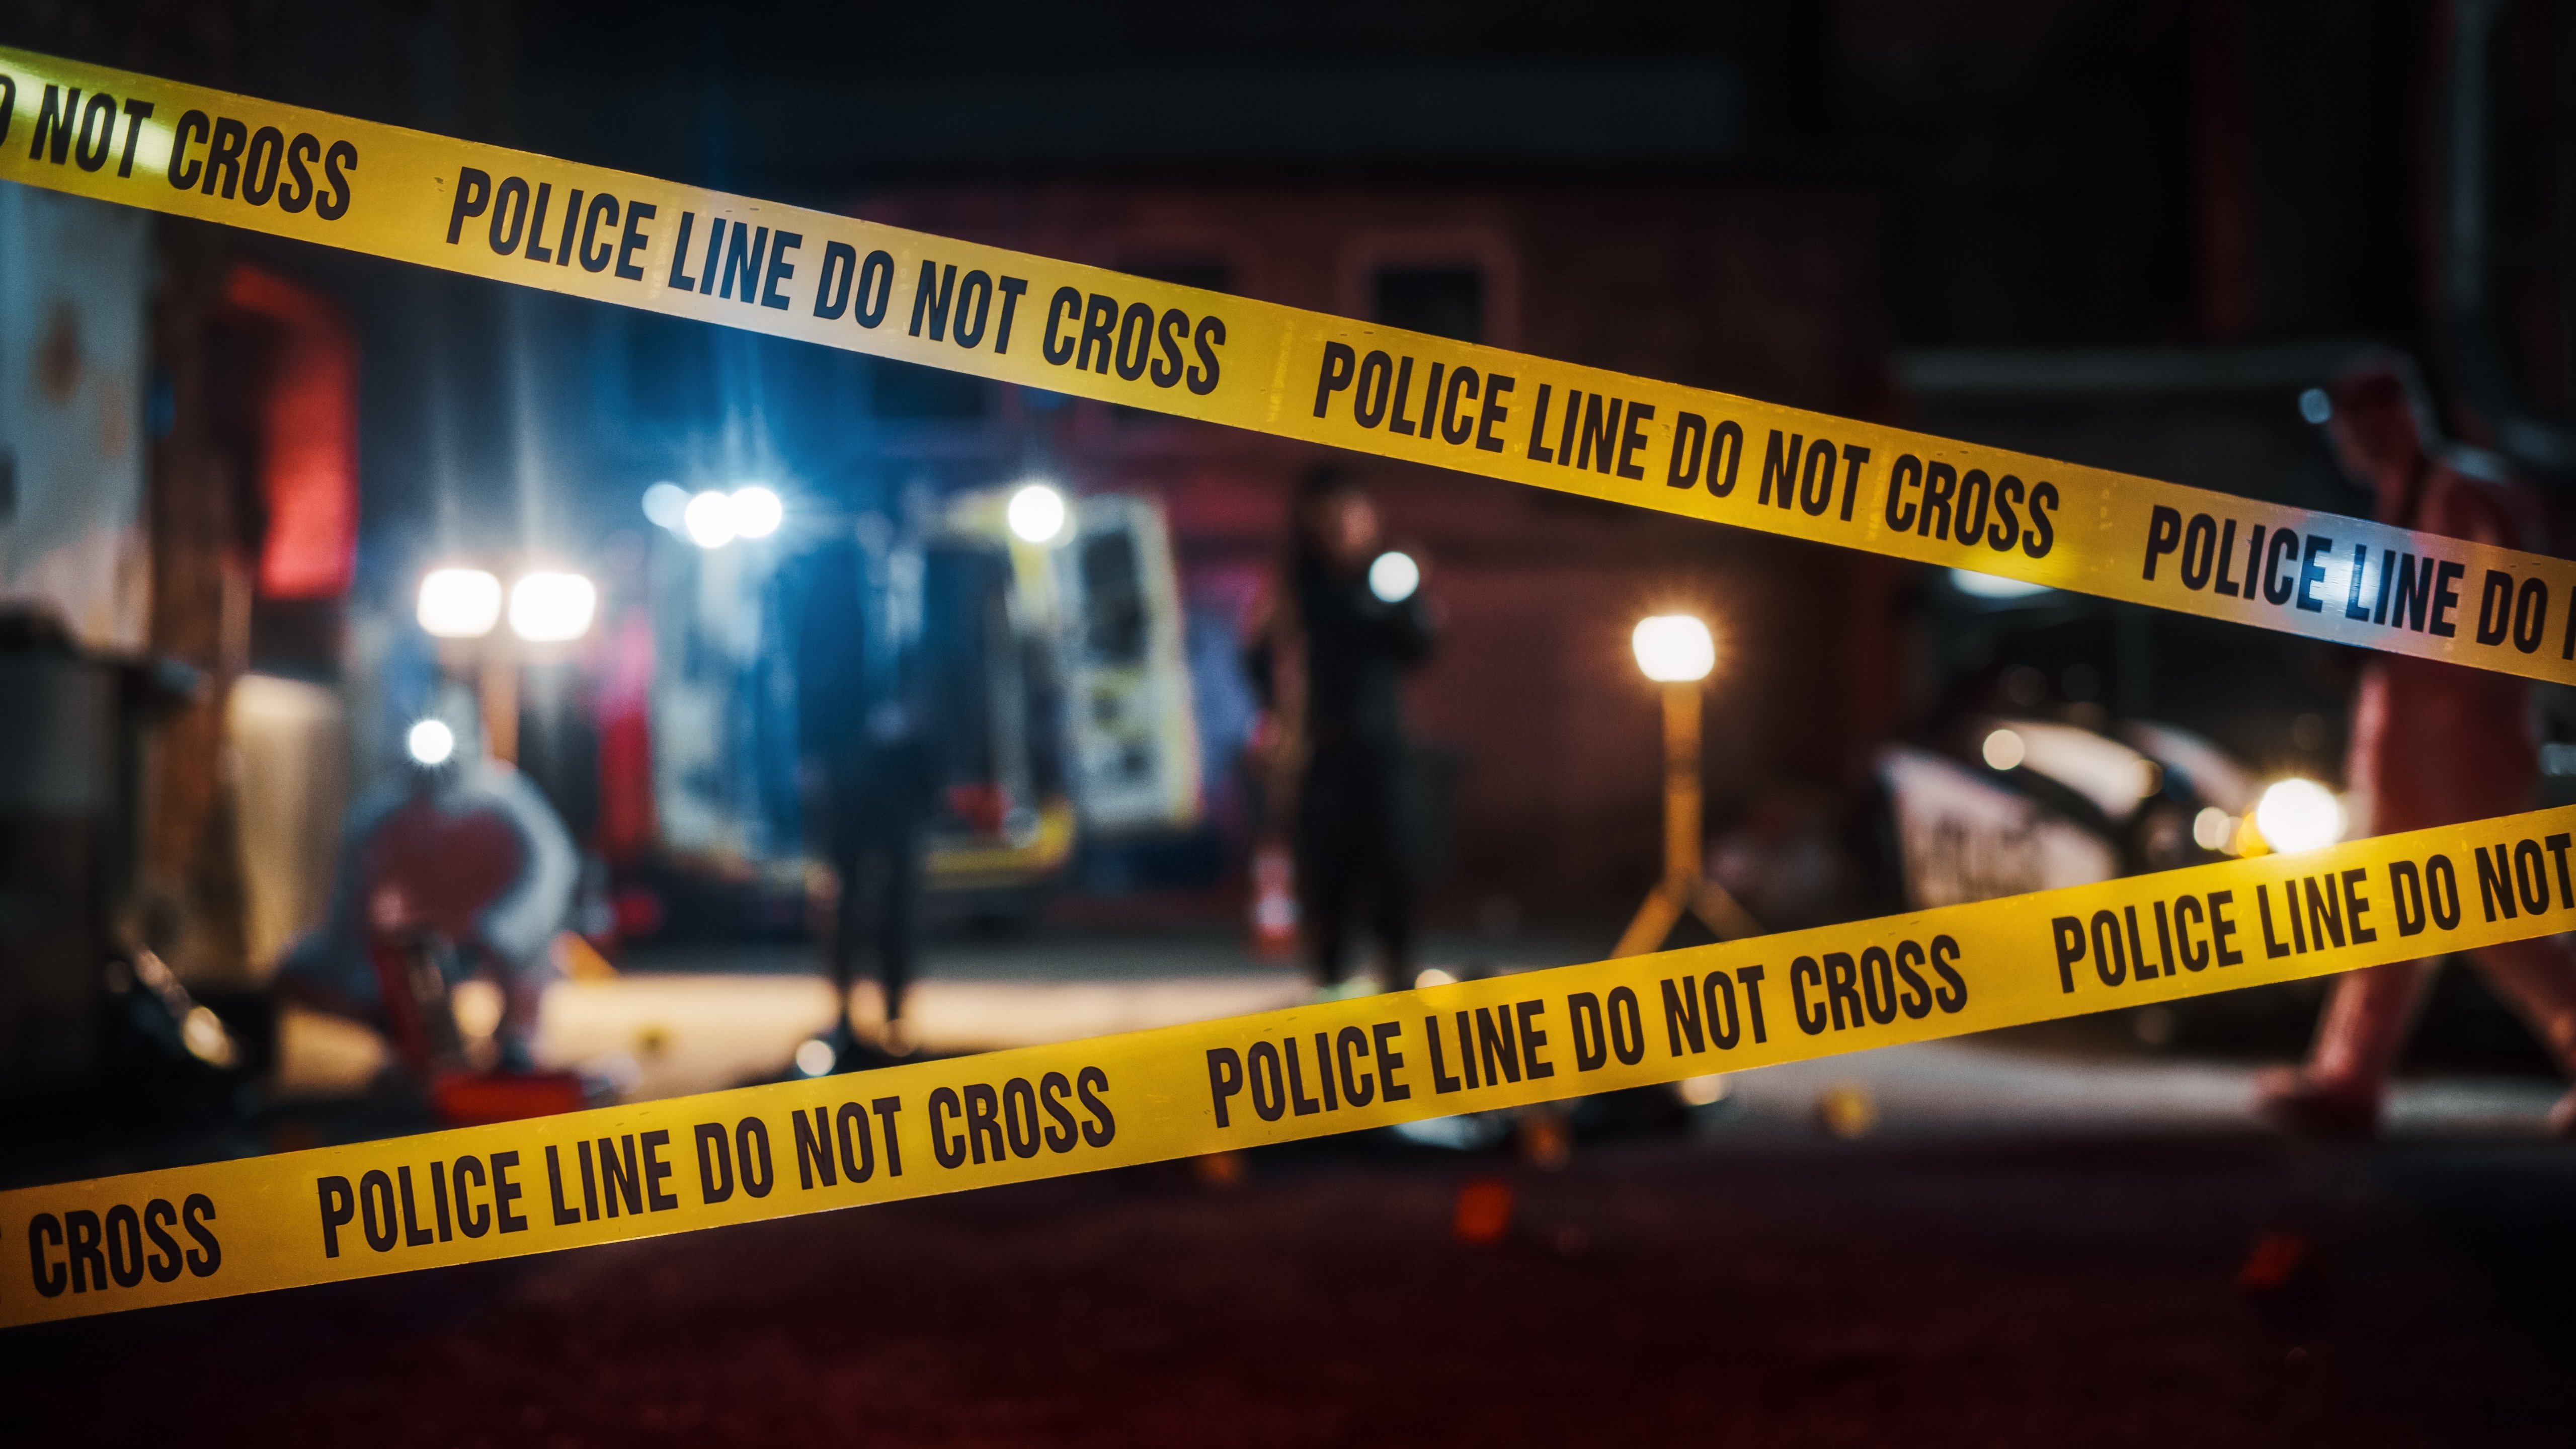 Escena del crimen | Fuente: Shutterstock